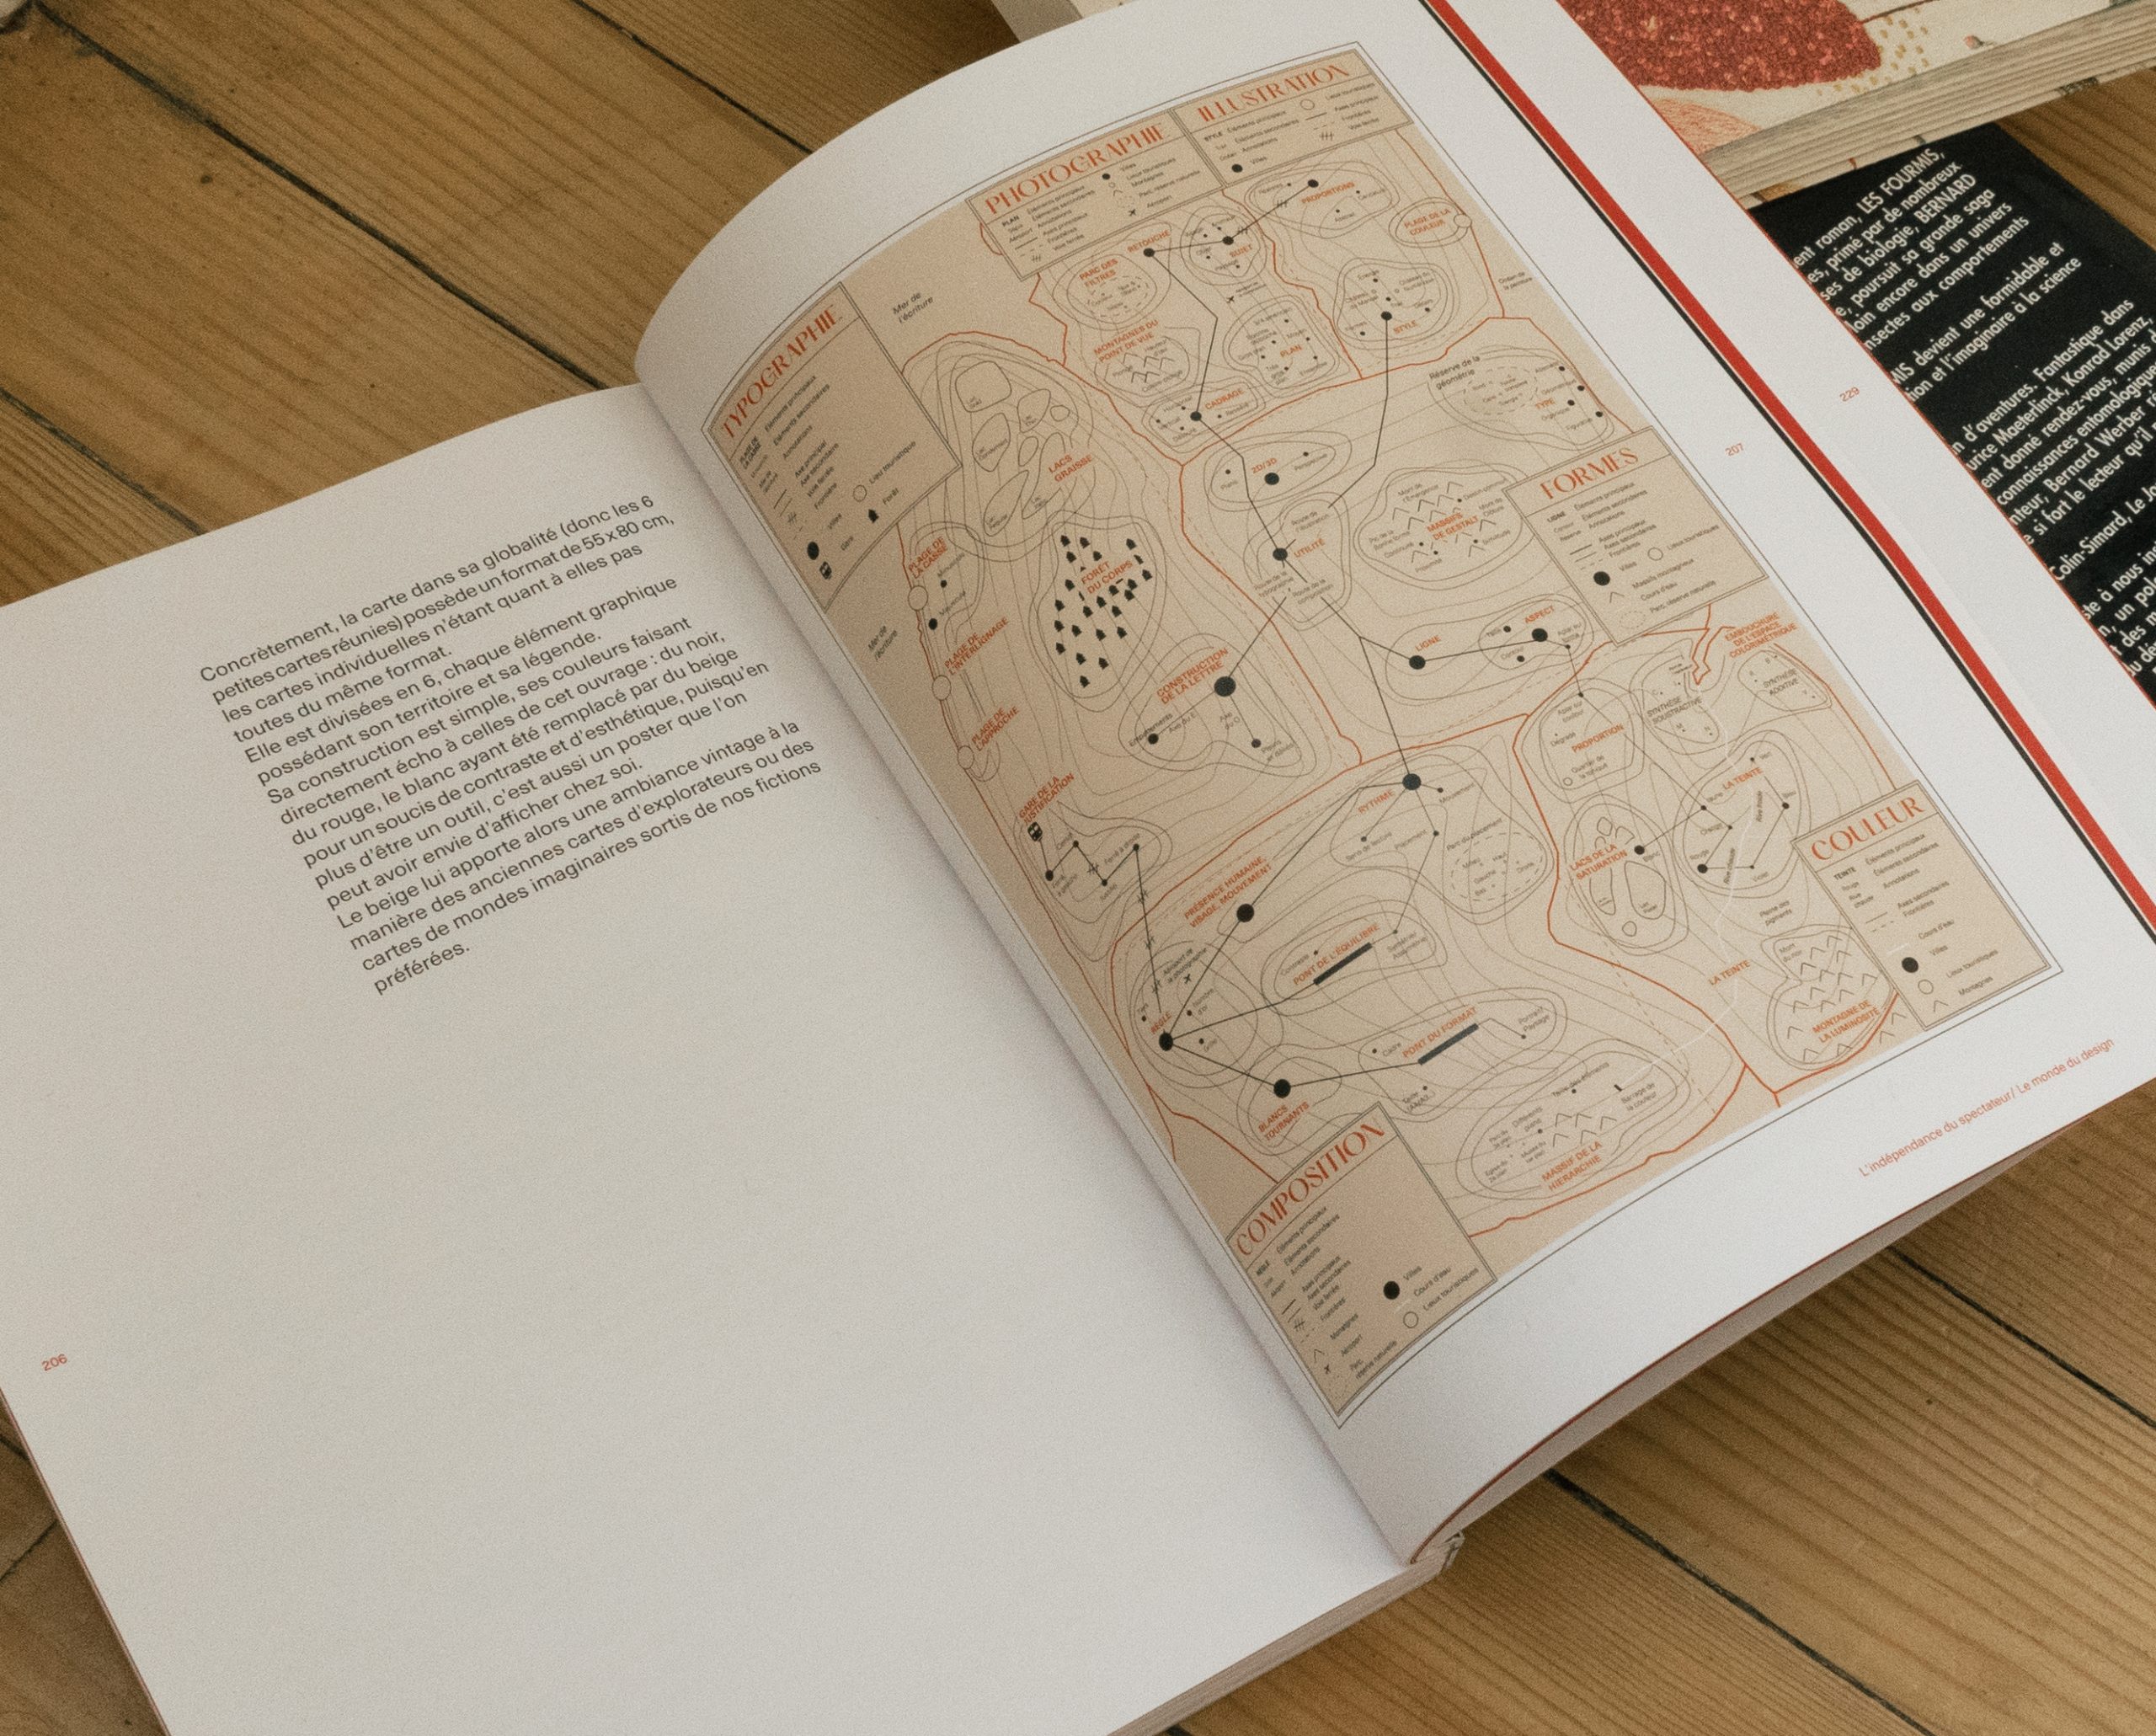 Présentation d'une double page du livre "Le Pouvoir du graphisme" expliquant l'idée créative derrière l'affiche "Le Monde du design" ainsi qu'un visuel intégral du poster.